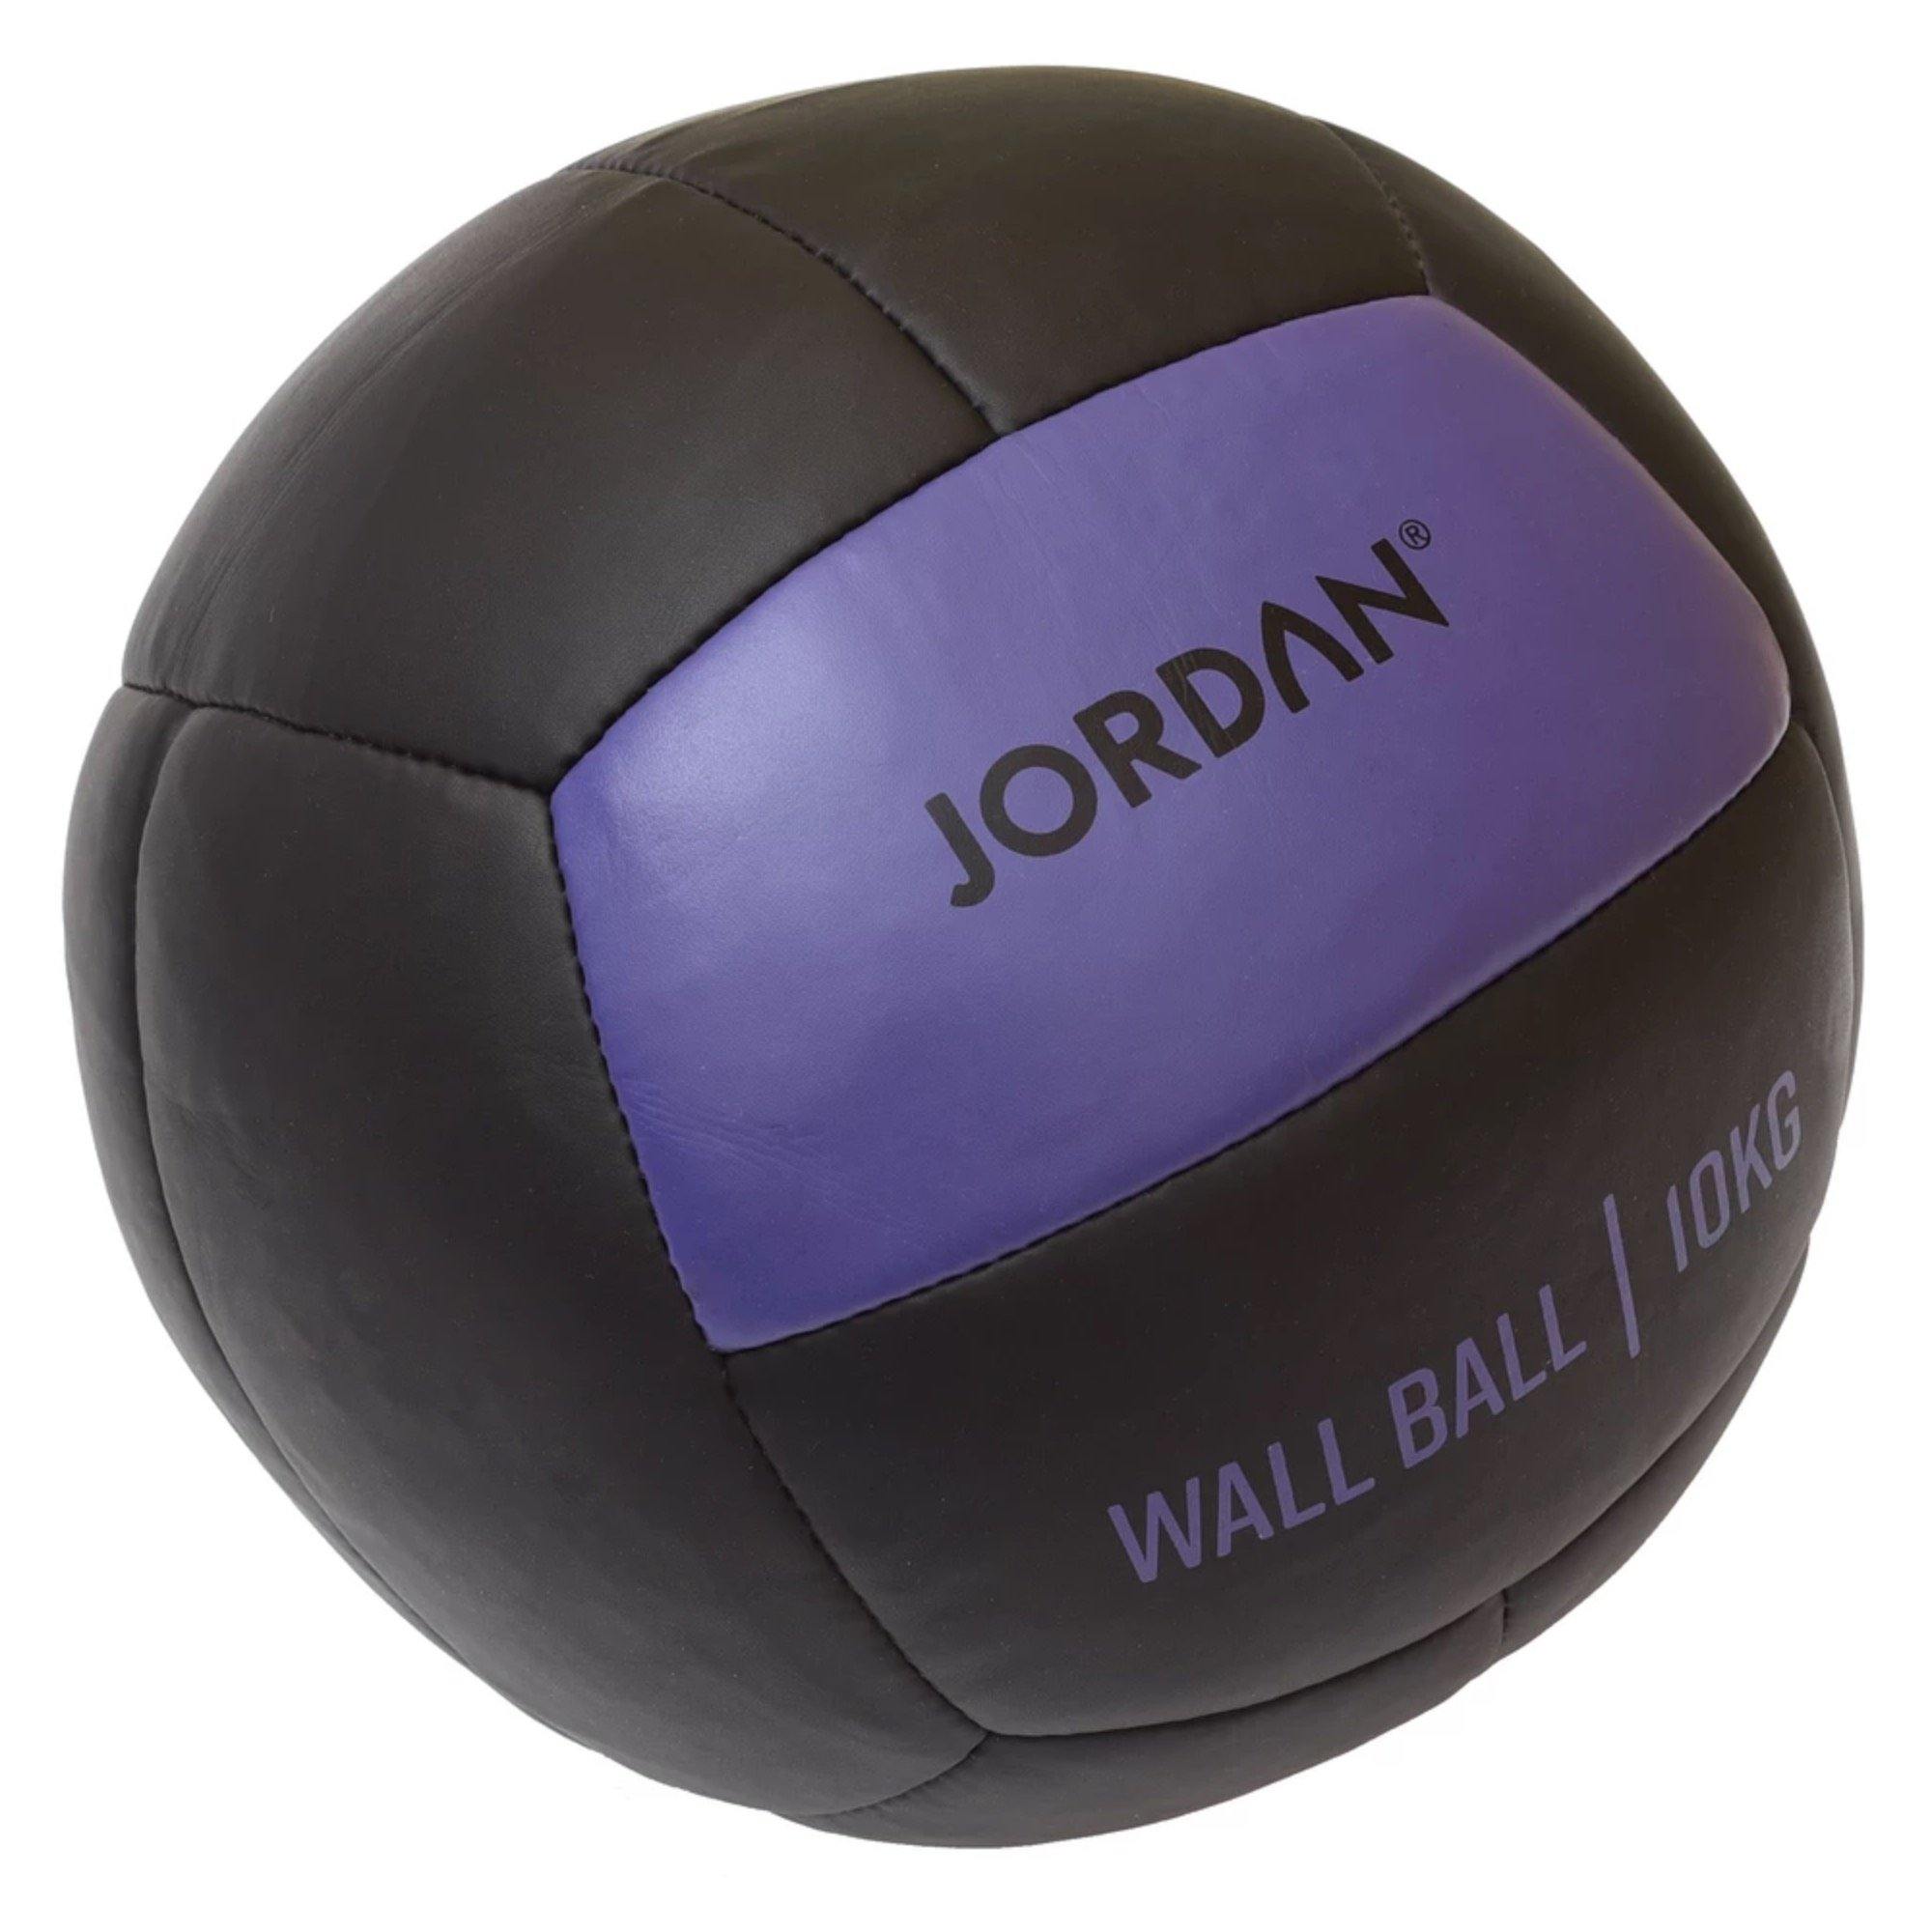 Jordan WallBall (Oversize Medicine Balls)